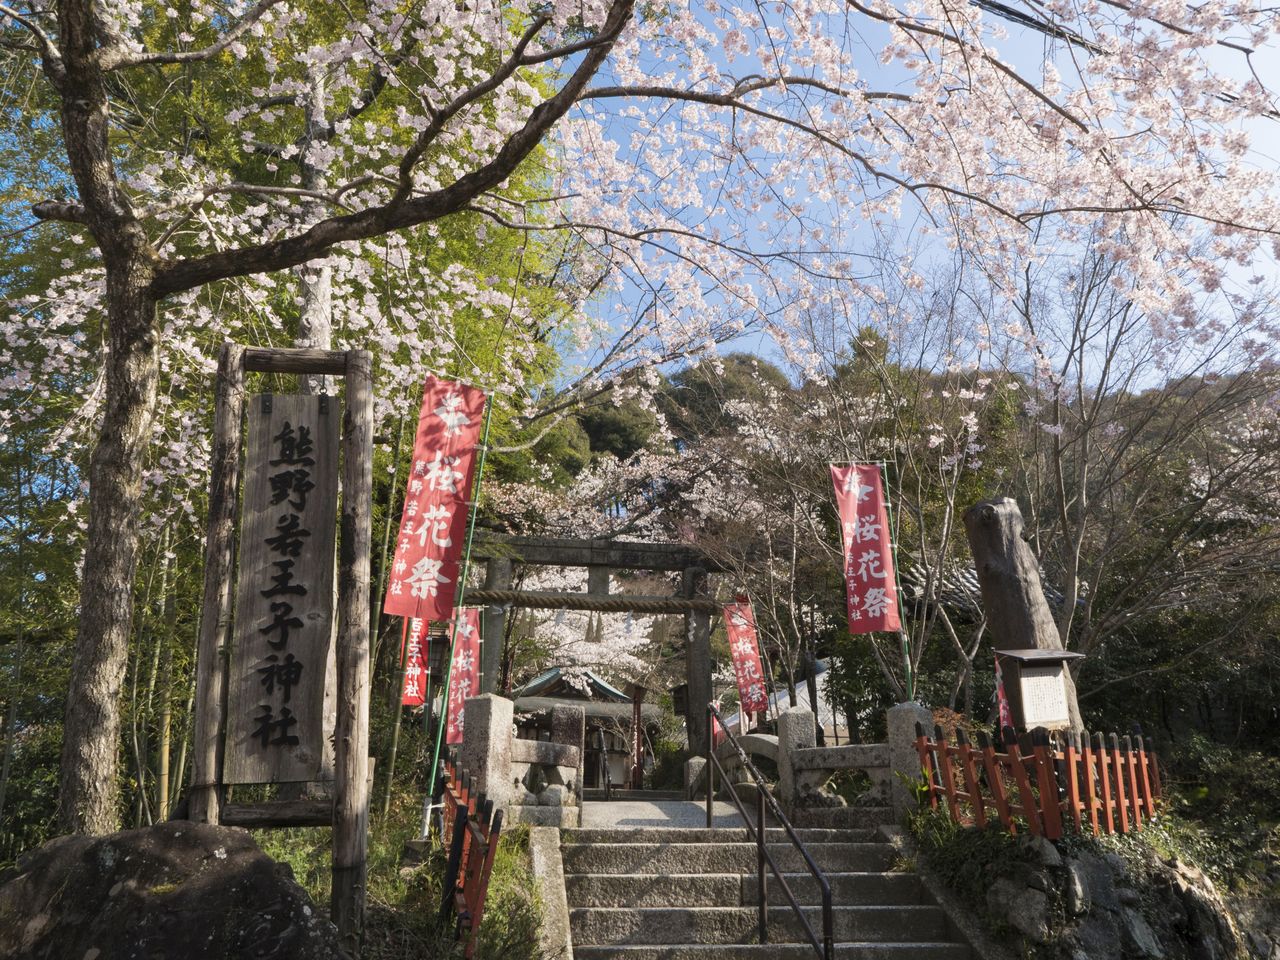 Святилище Кумано Някуодзи расположено недалеко у южного входа на Философскую тропу